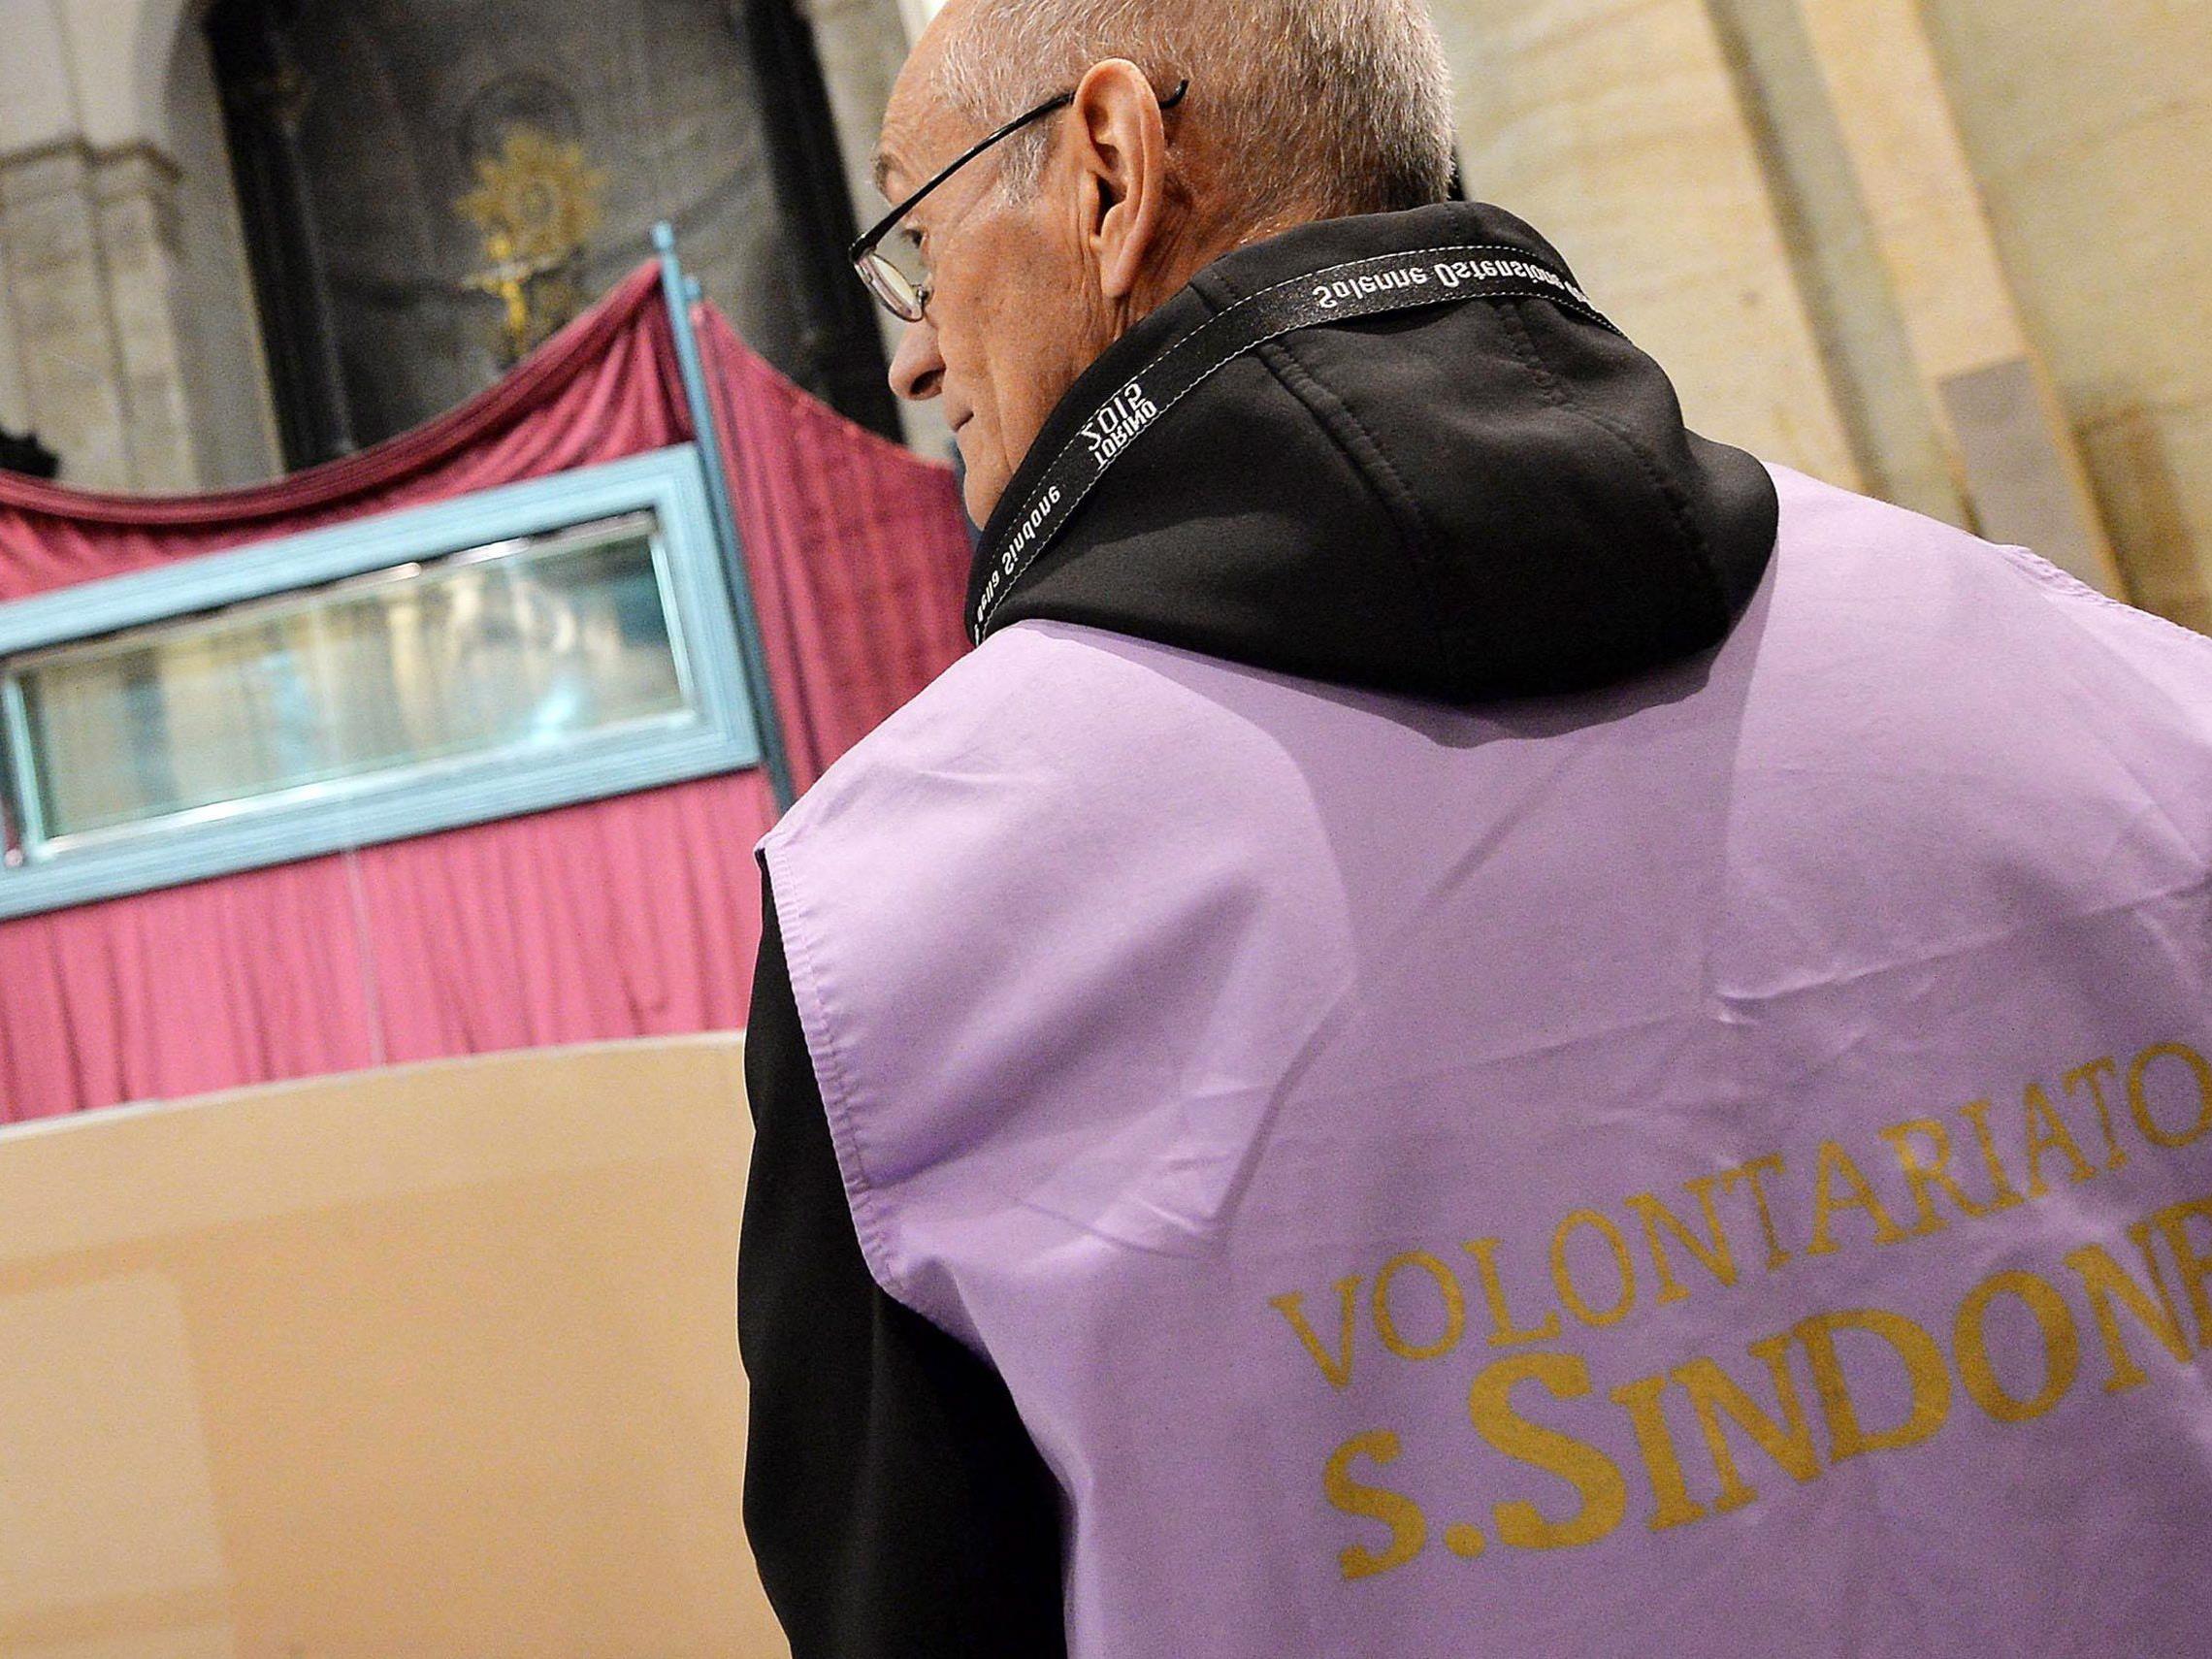 Turiner Grabtuch wird ausgestellt: Drei Millionen Pilger erwartet